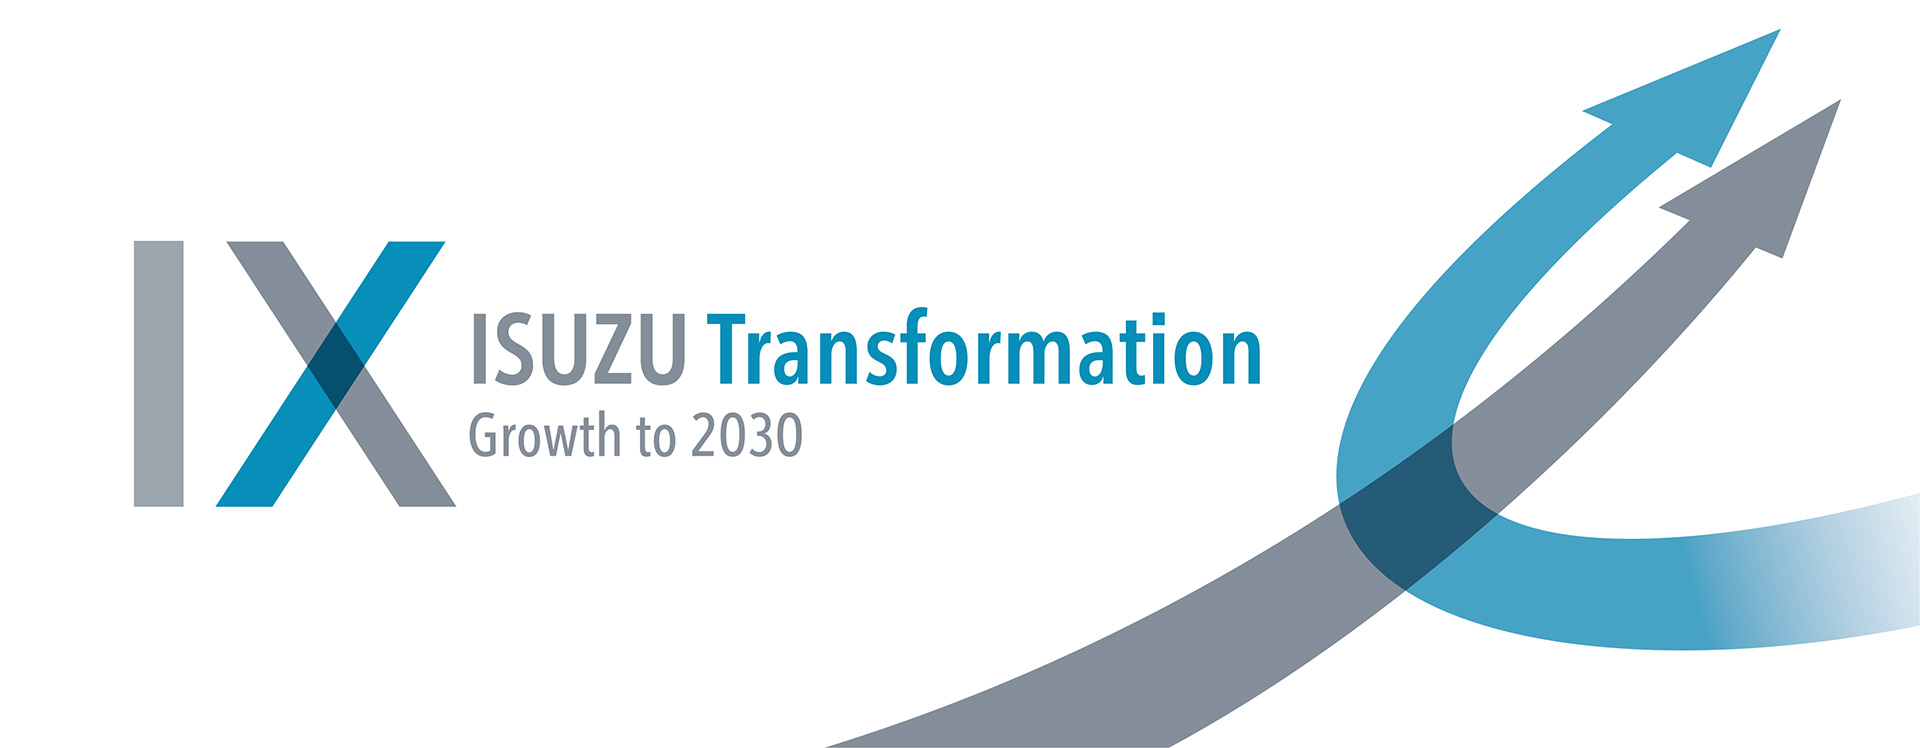 ISUZU Transformation Growth to 2030